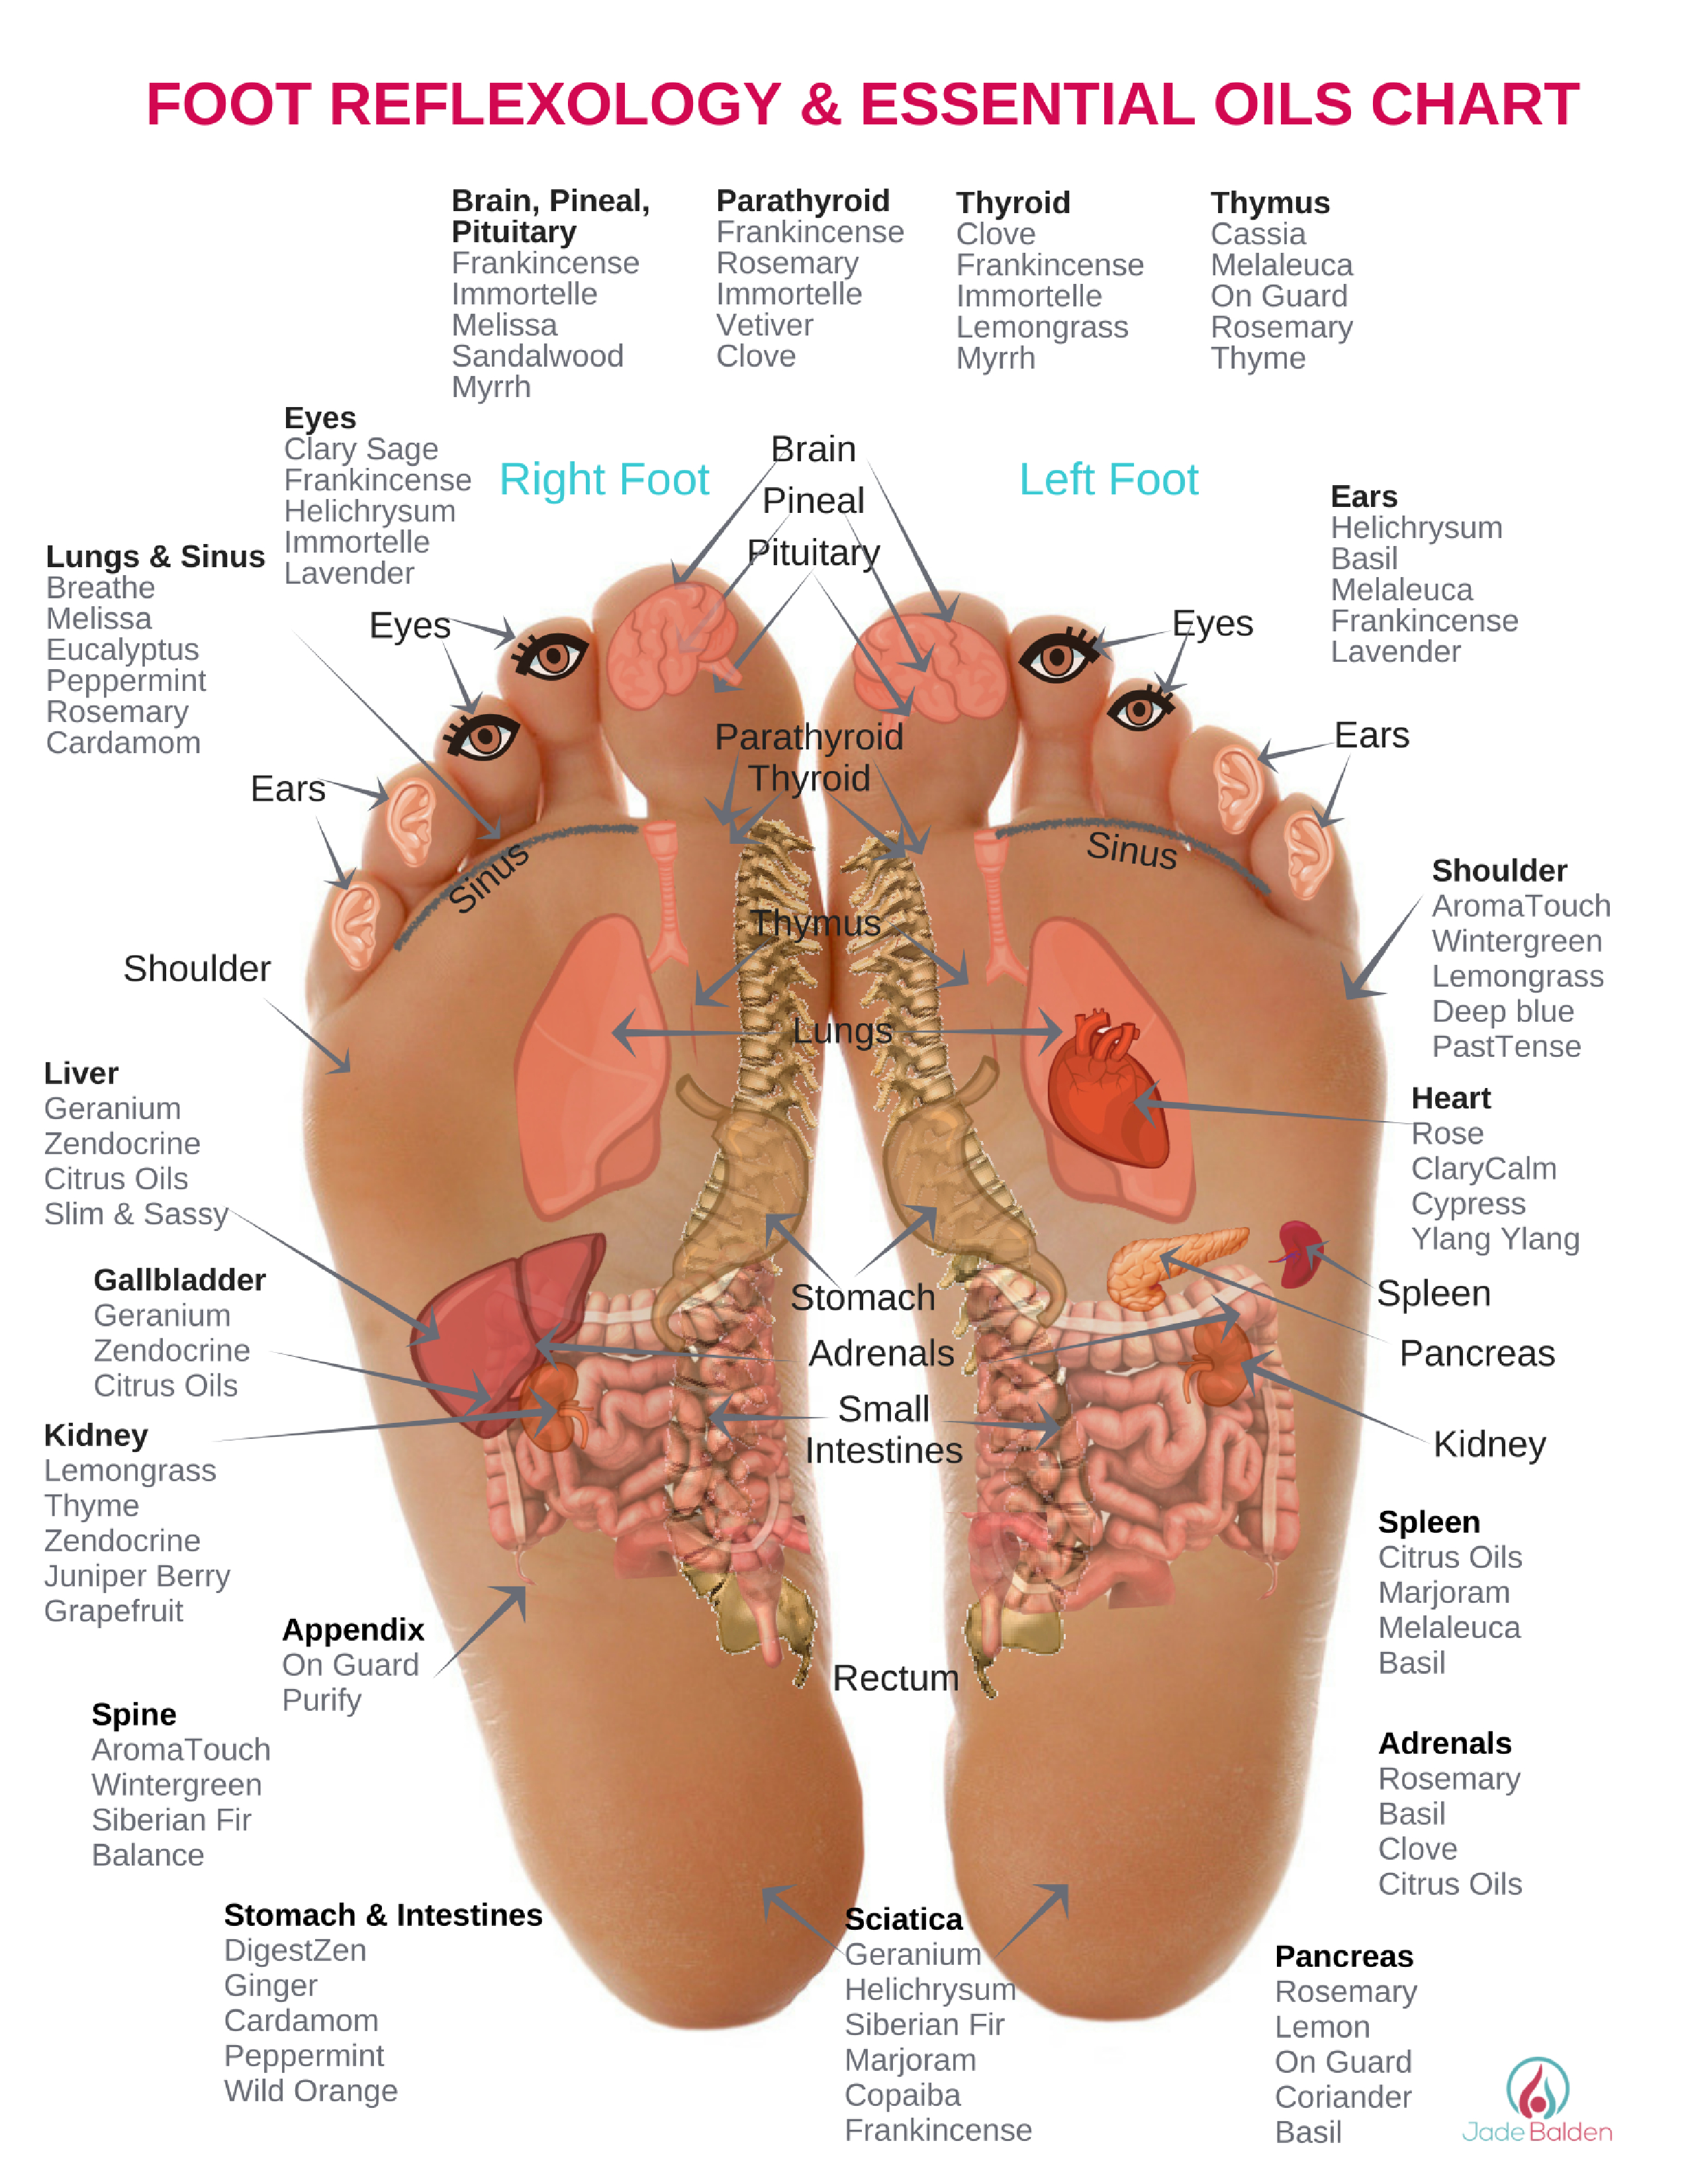 Foot Reflexology Diagram Foot Reflexology Essential Oils Jade Balden